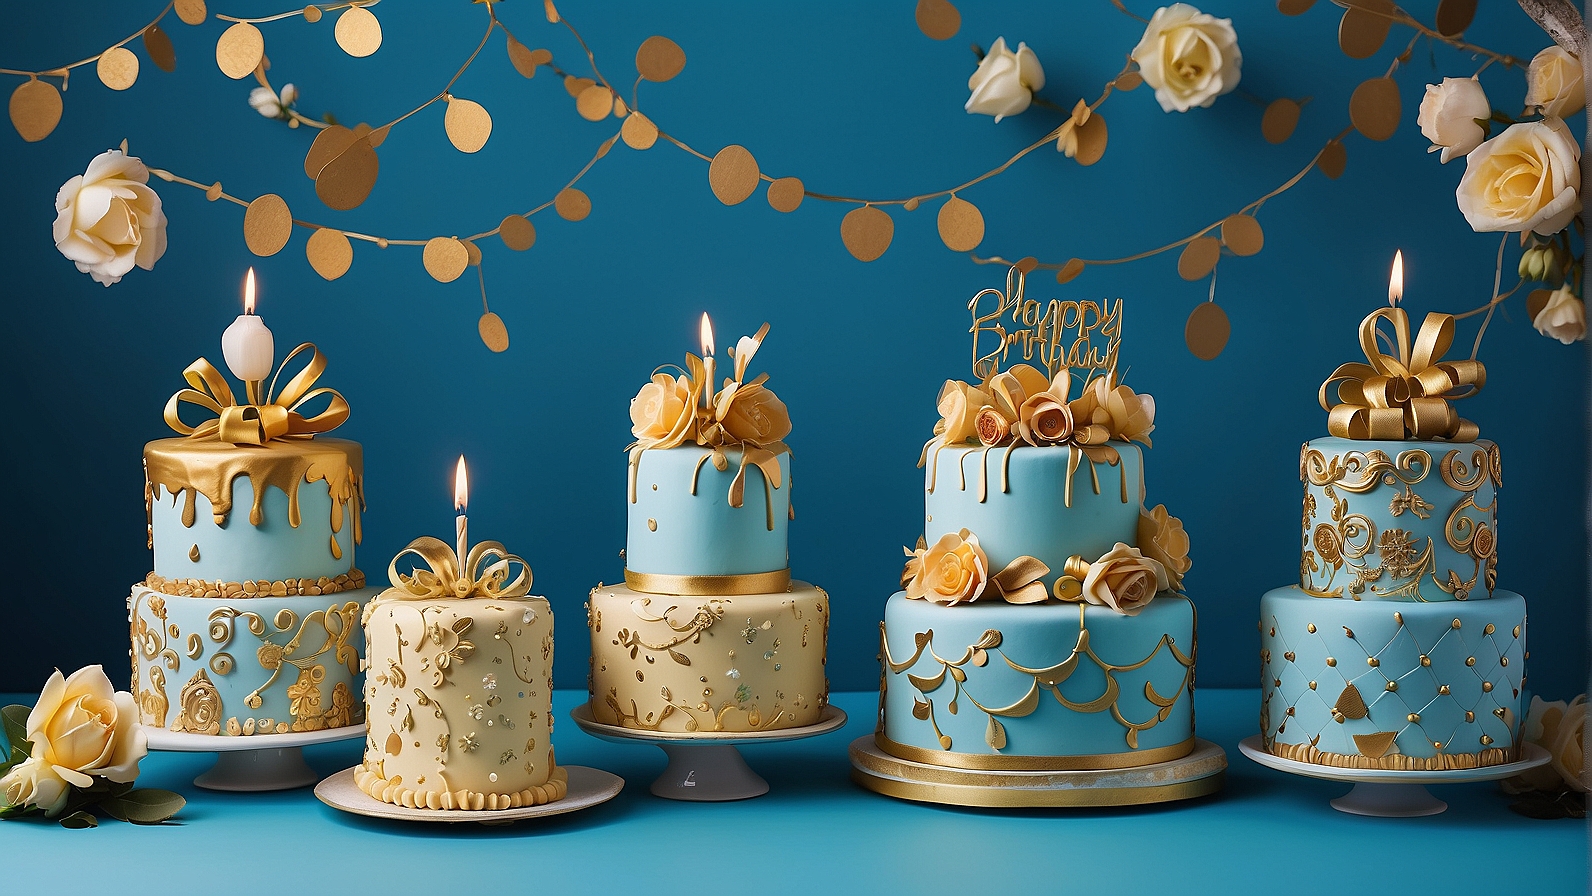 Happy Birthday Blue cakes